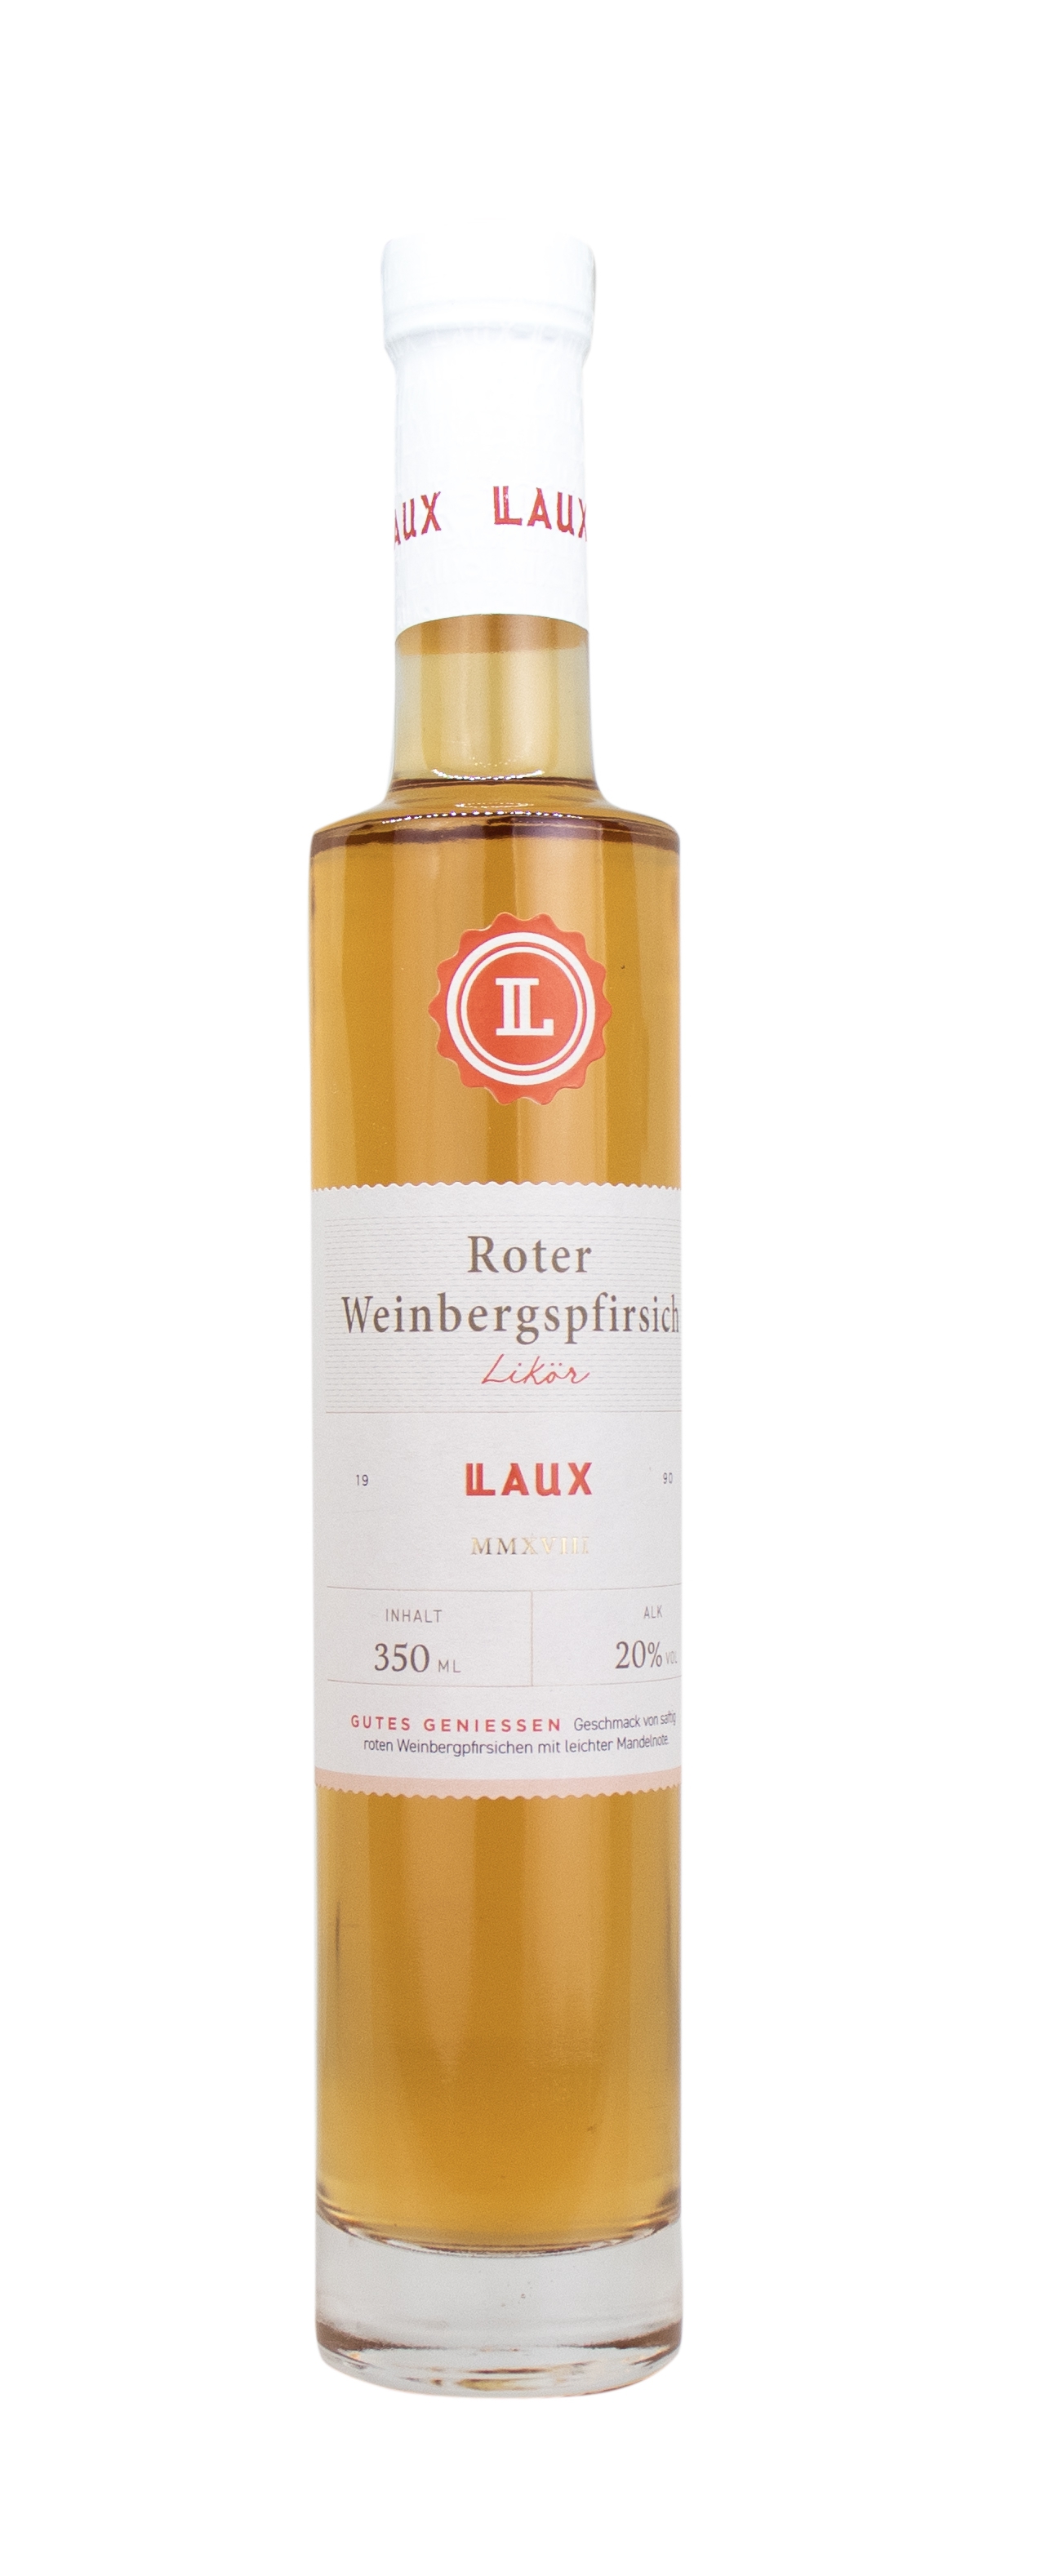 Roter Weinbergspfirsich-Likör - 350 ml Flasche